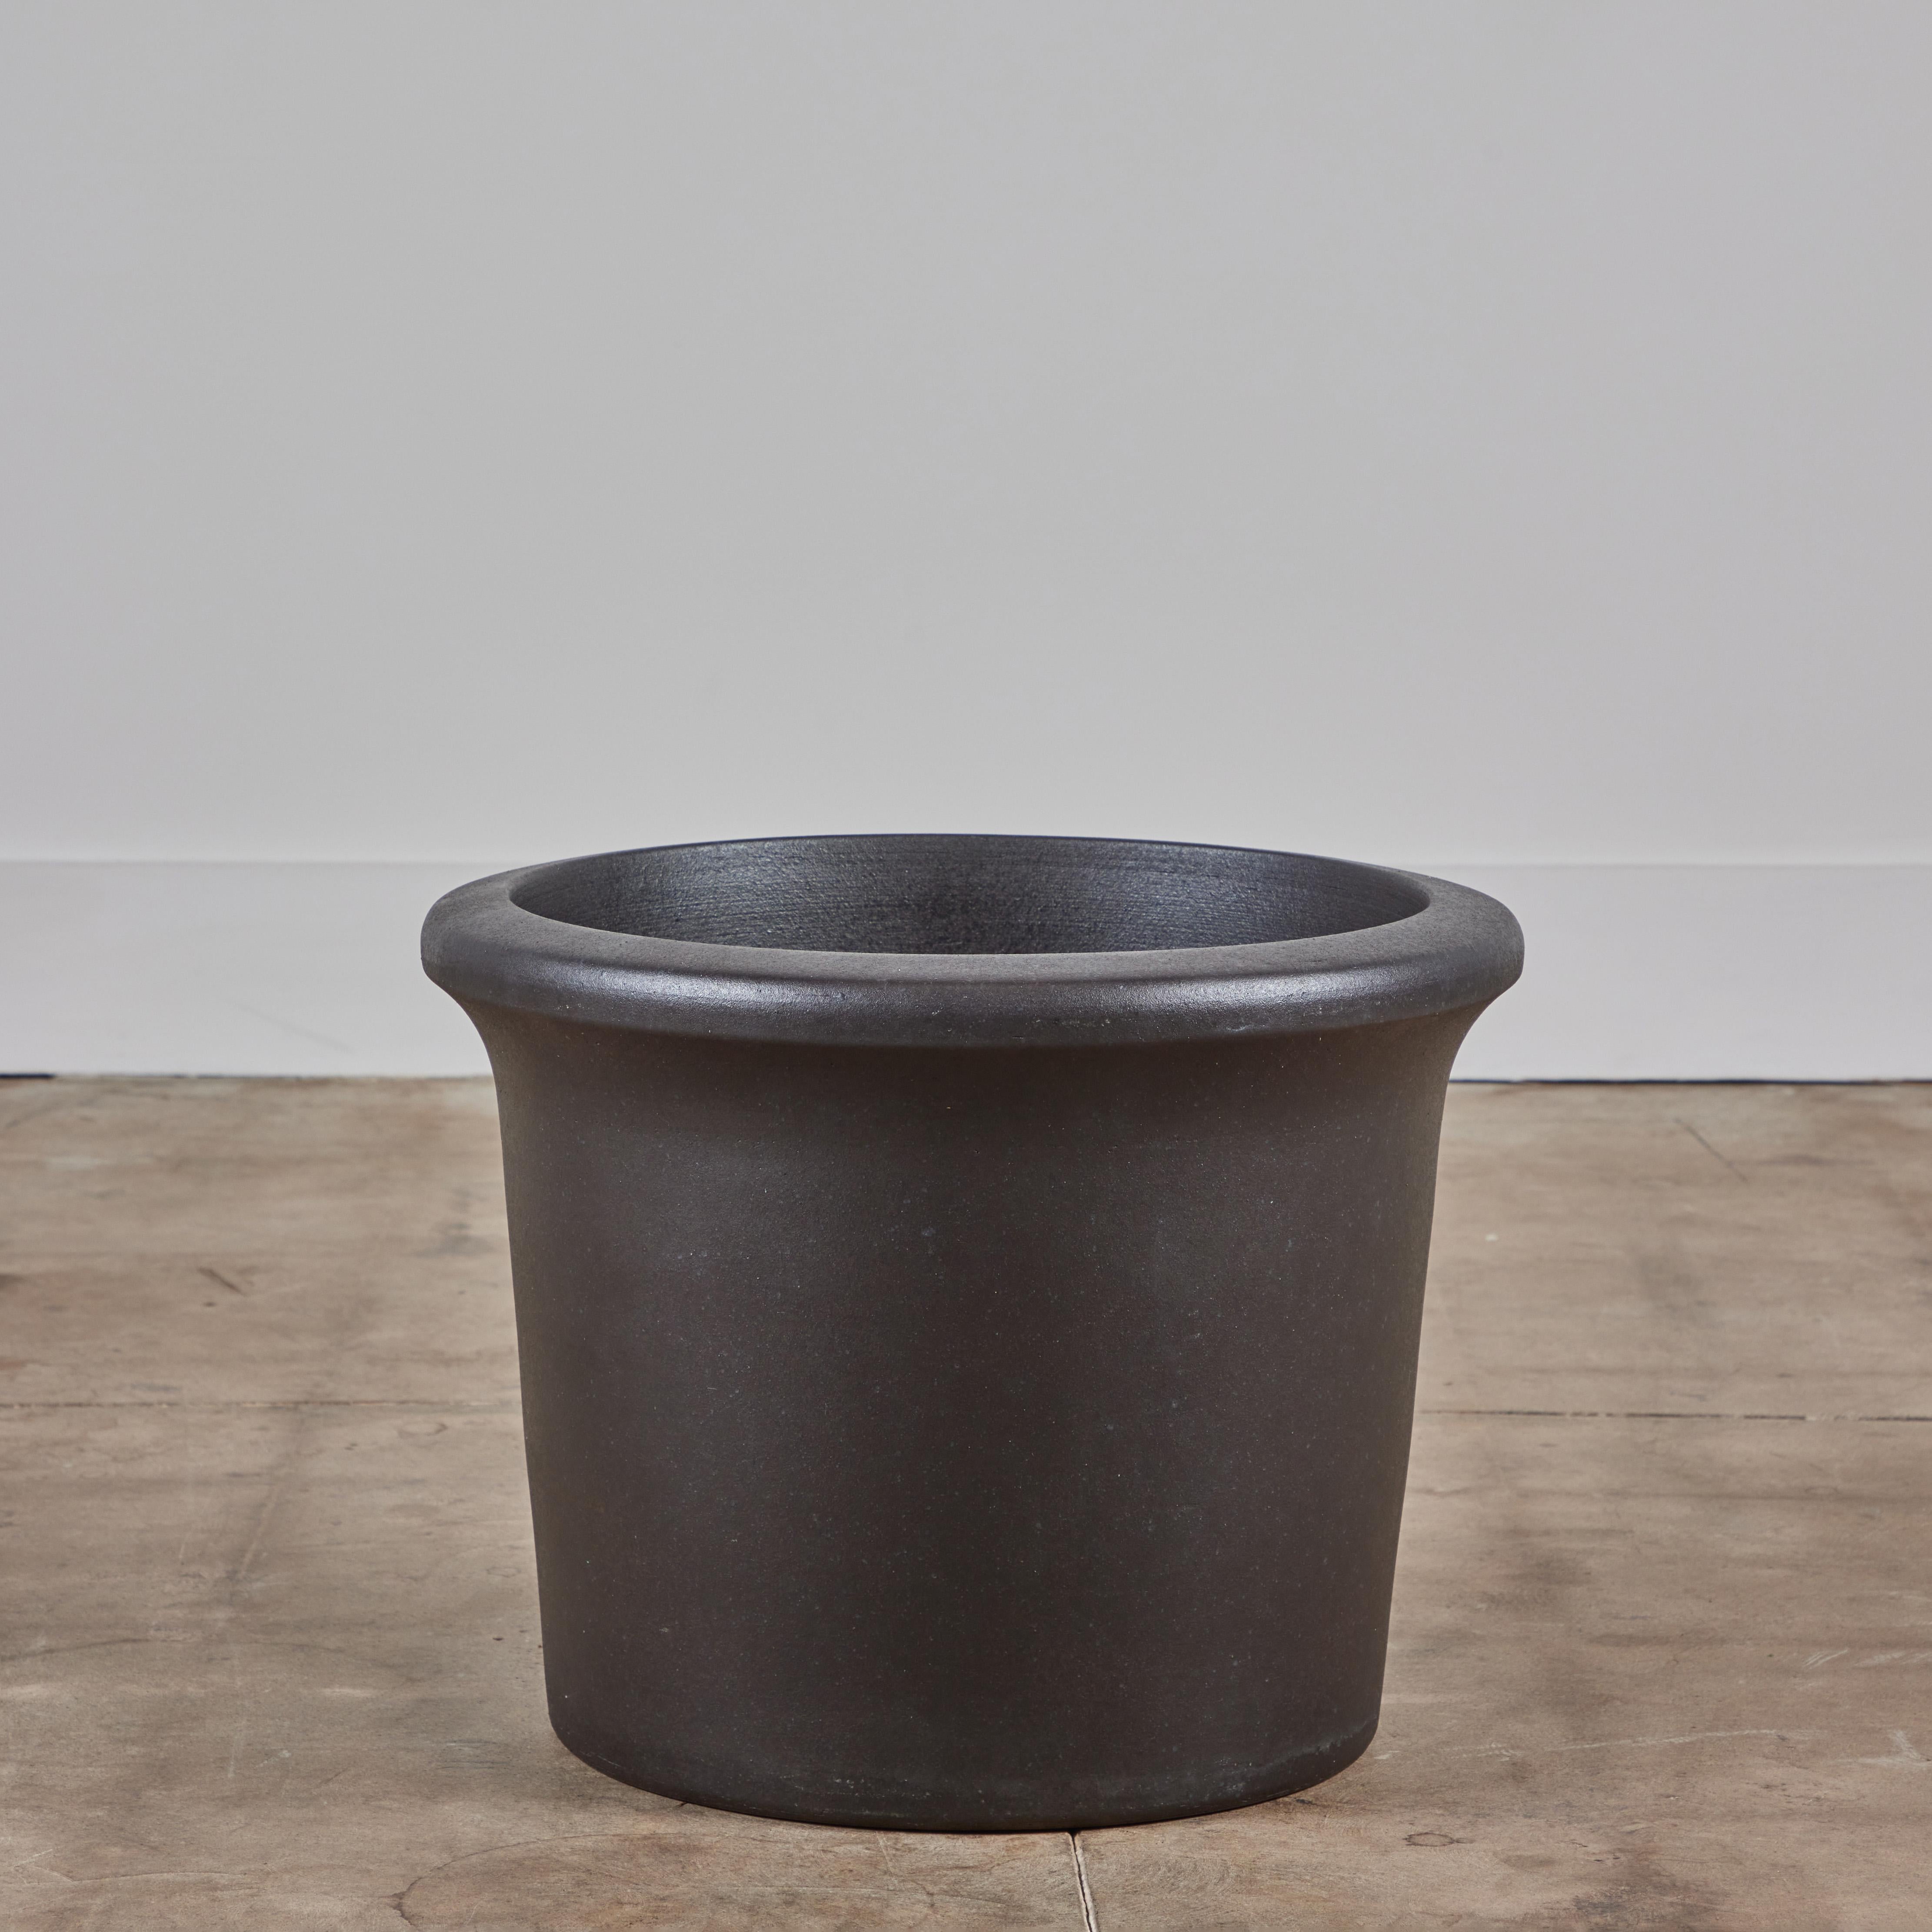 Ein schöner Tulpen-Pflanztopf mit schwarzer Glasur von Architectural Pottery. Dieses AP-3203 Pflanzgefäß hat die Form eines Fasses mit einer abgerundeten Lippe, die sich nach oben hin verjüngt. Architectural Pottery Container können direkt bepflanzt